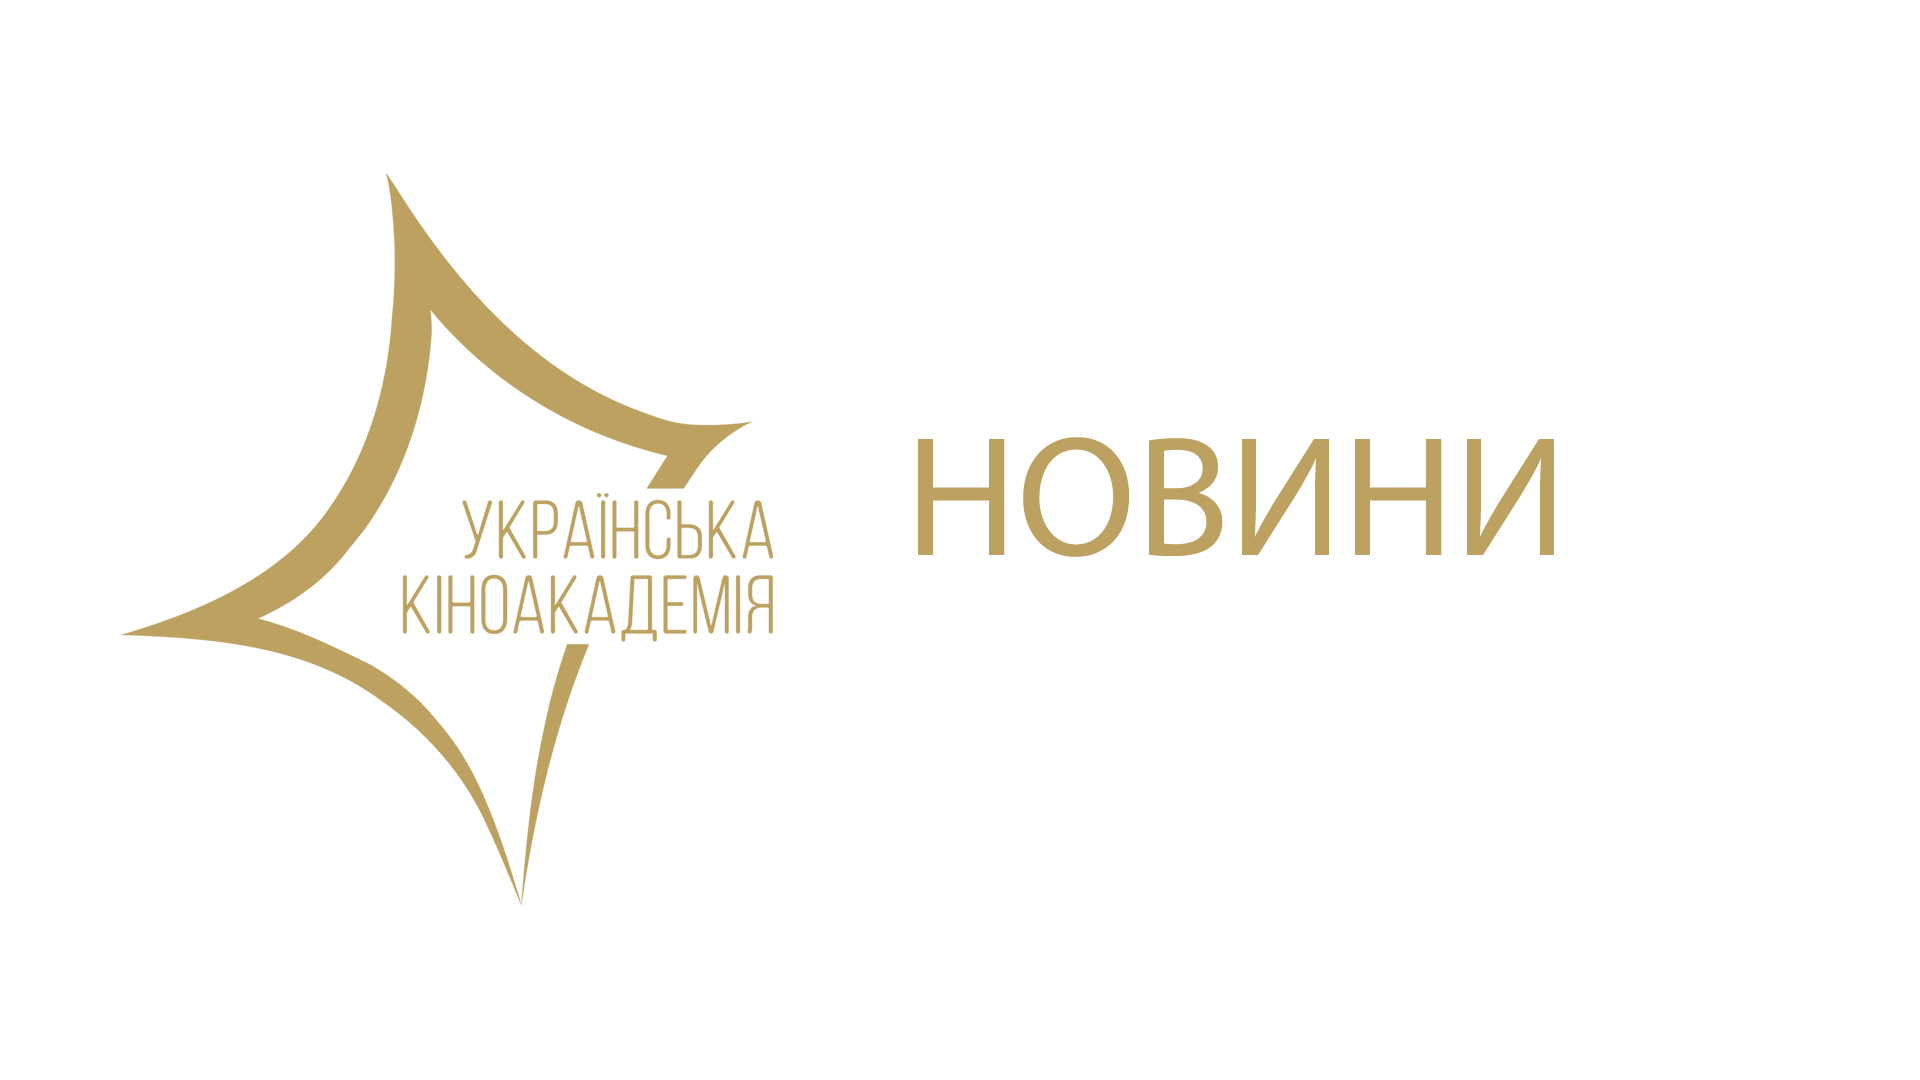 20 квітня відбудеться церемонія вручення нагород Другої Національної кінопремії. Українська кіноакадемія оголошує імена тих, хто вручатиме нагороди у 18 номінаціях